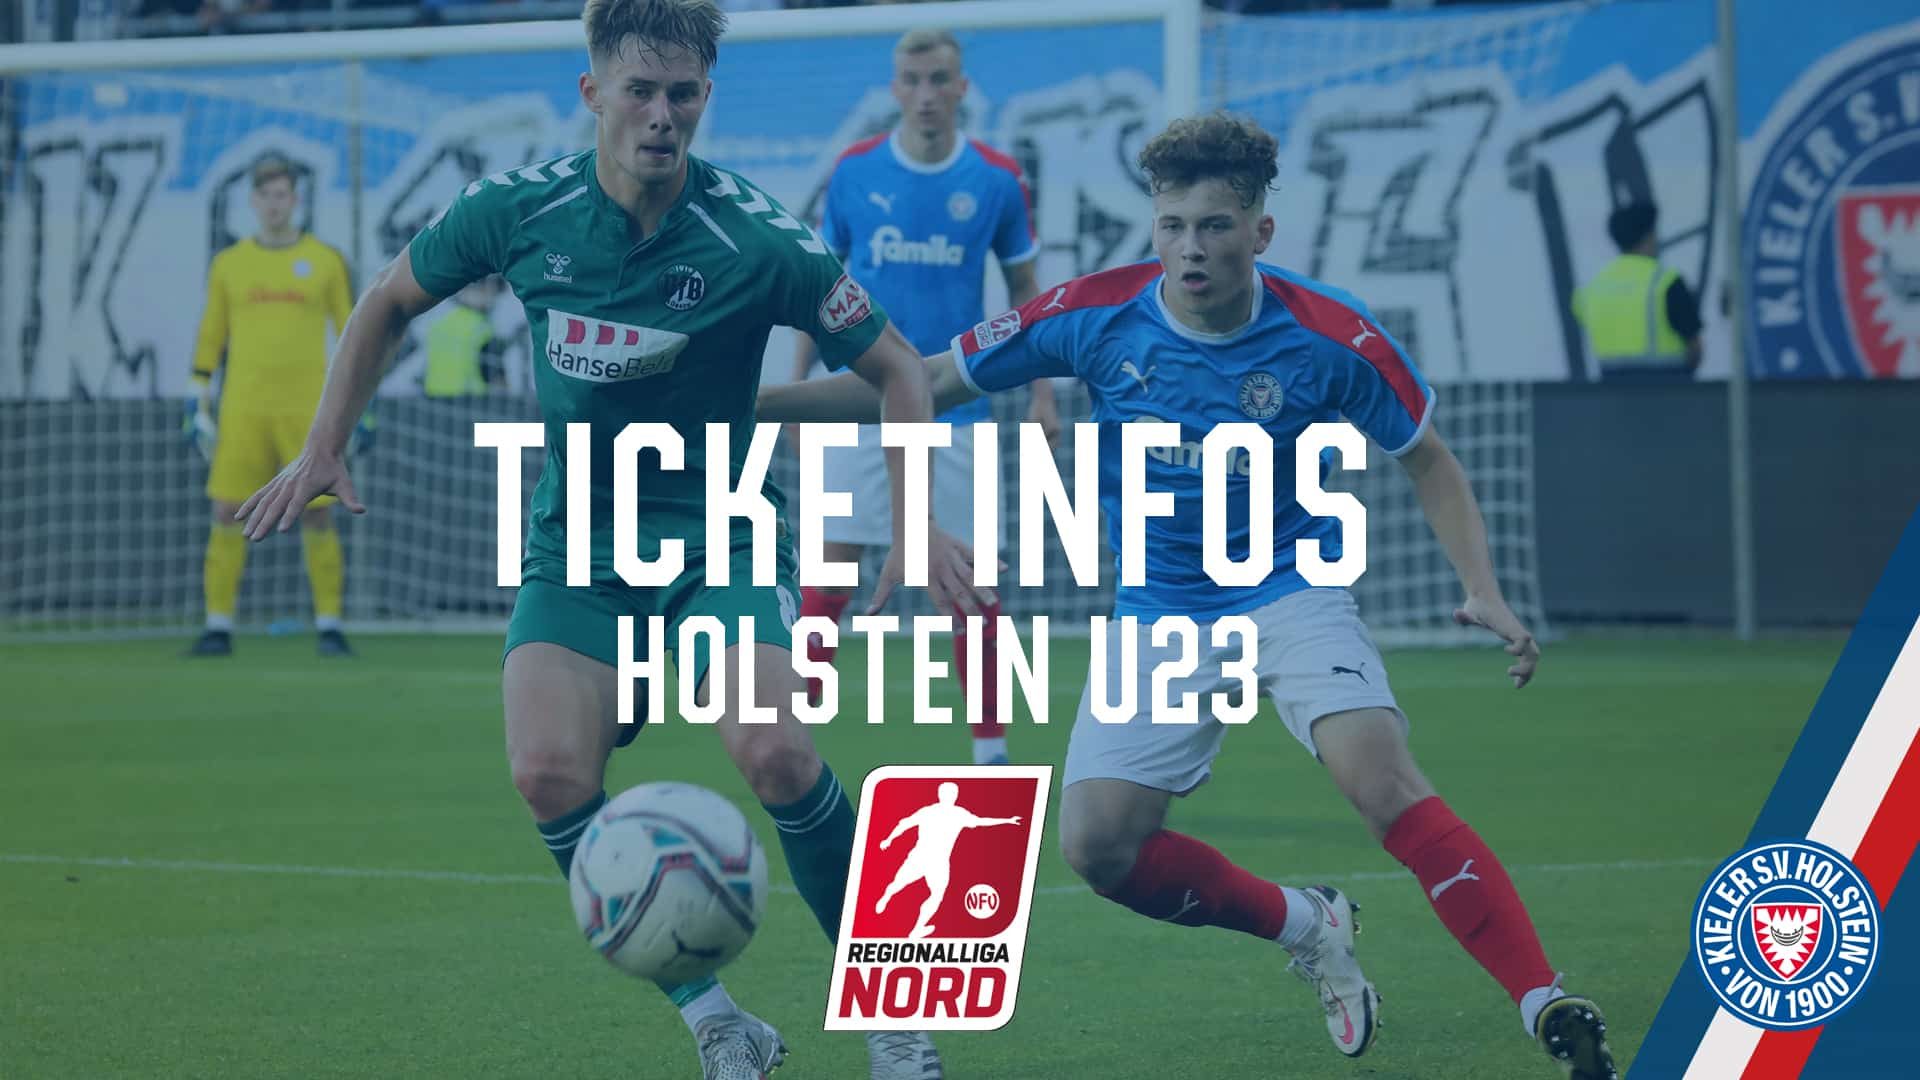 20211213 Ticketinfos VfB Lübeck - Holstein U23